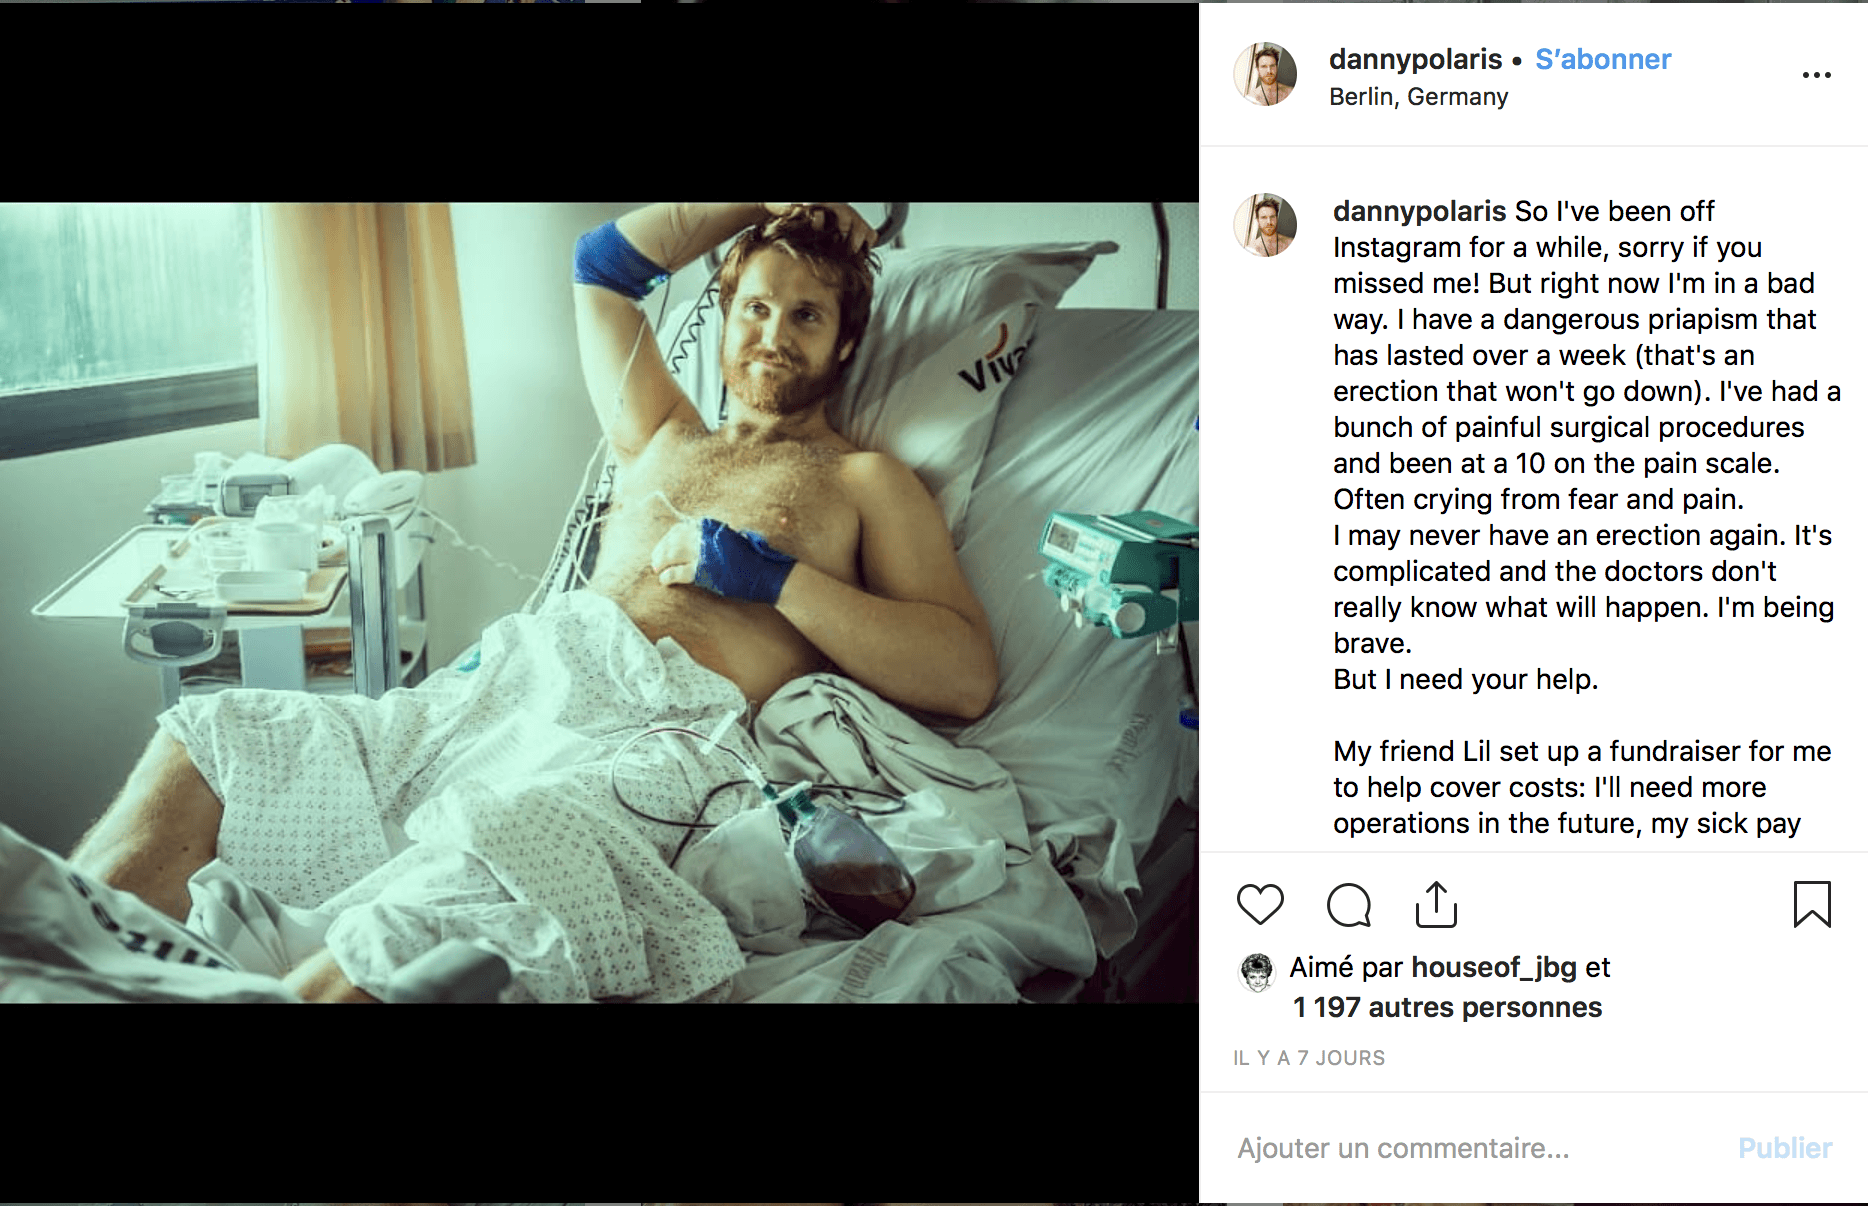 Il passe dix jours à l'hôpital pour une érection permanente (et pourrait même être amputé)